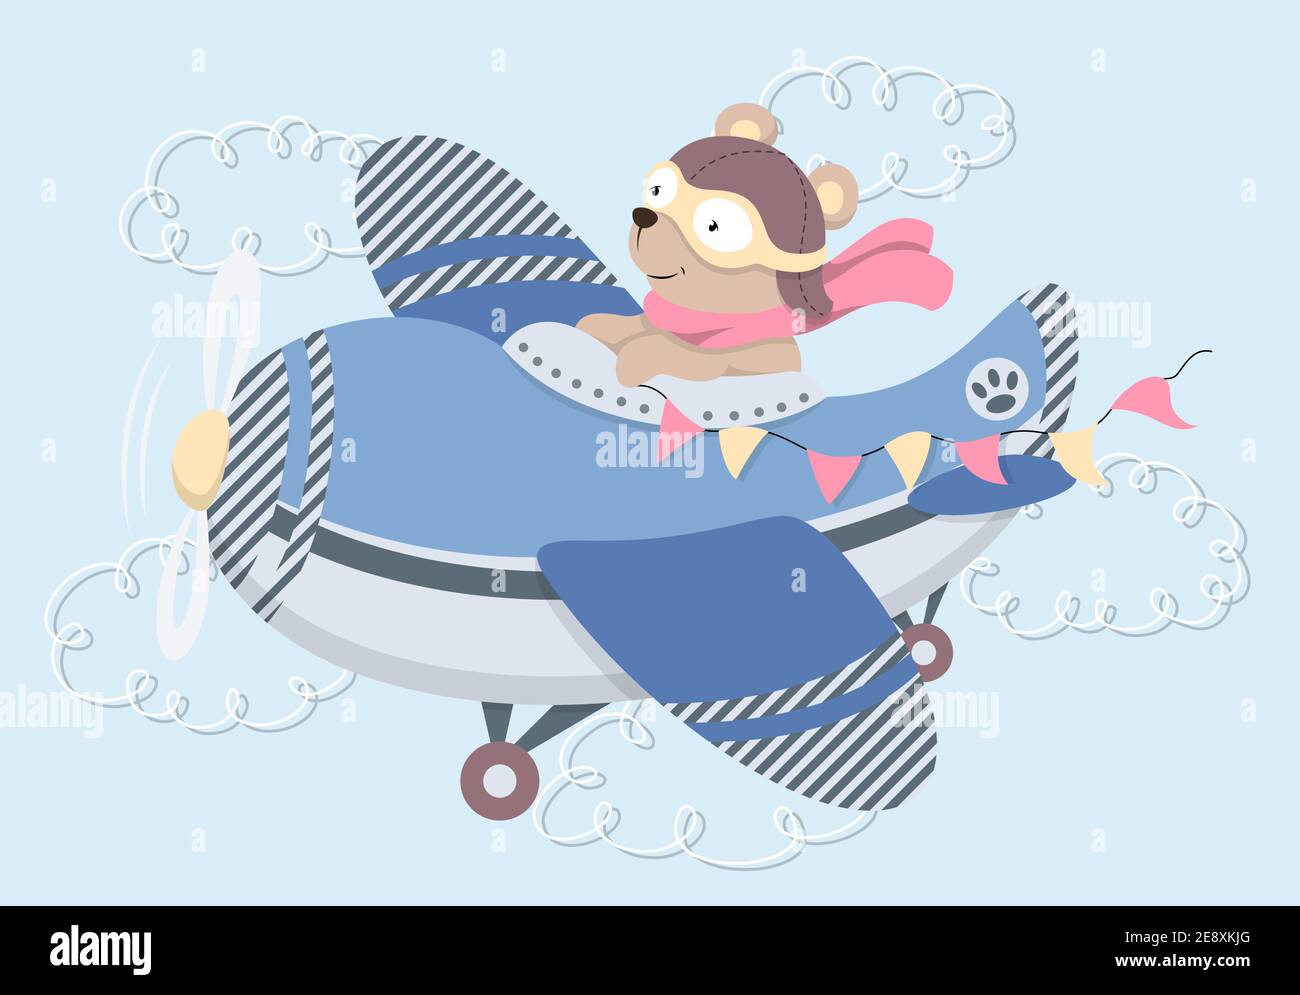 Cute cartoon Teddy bear flying on plane Stock Vector